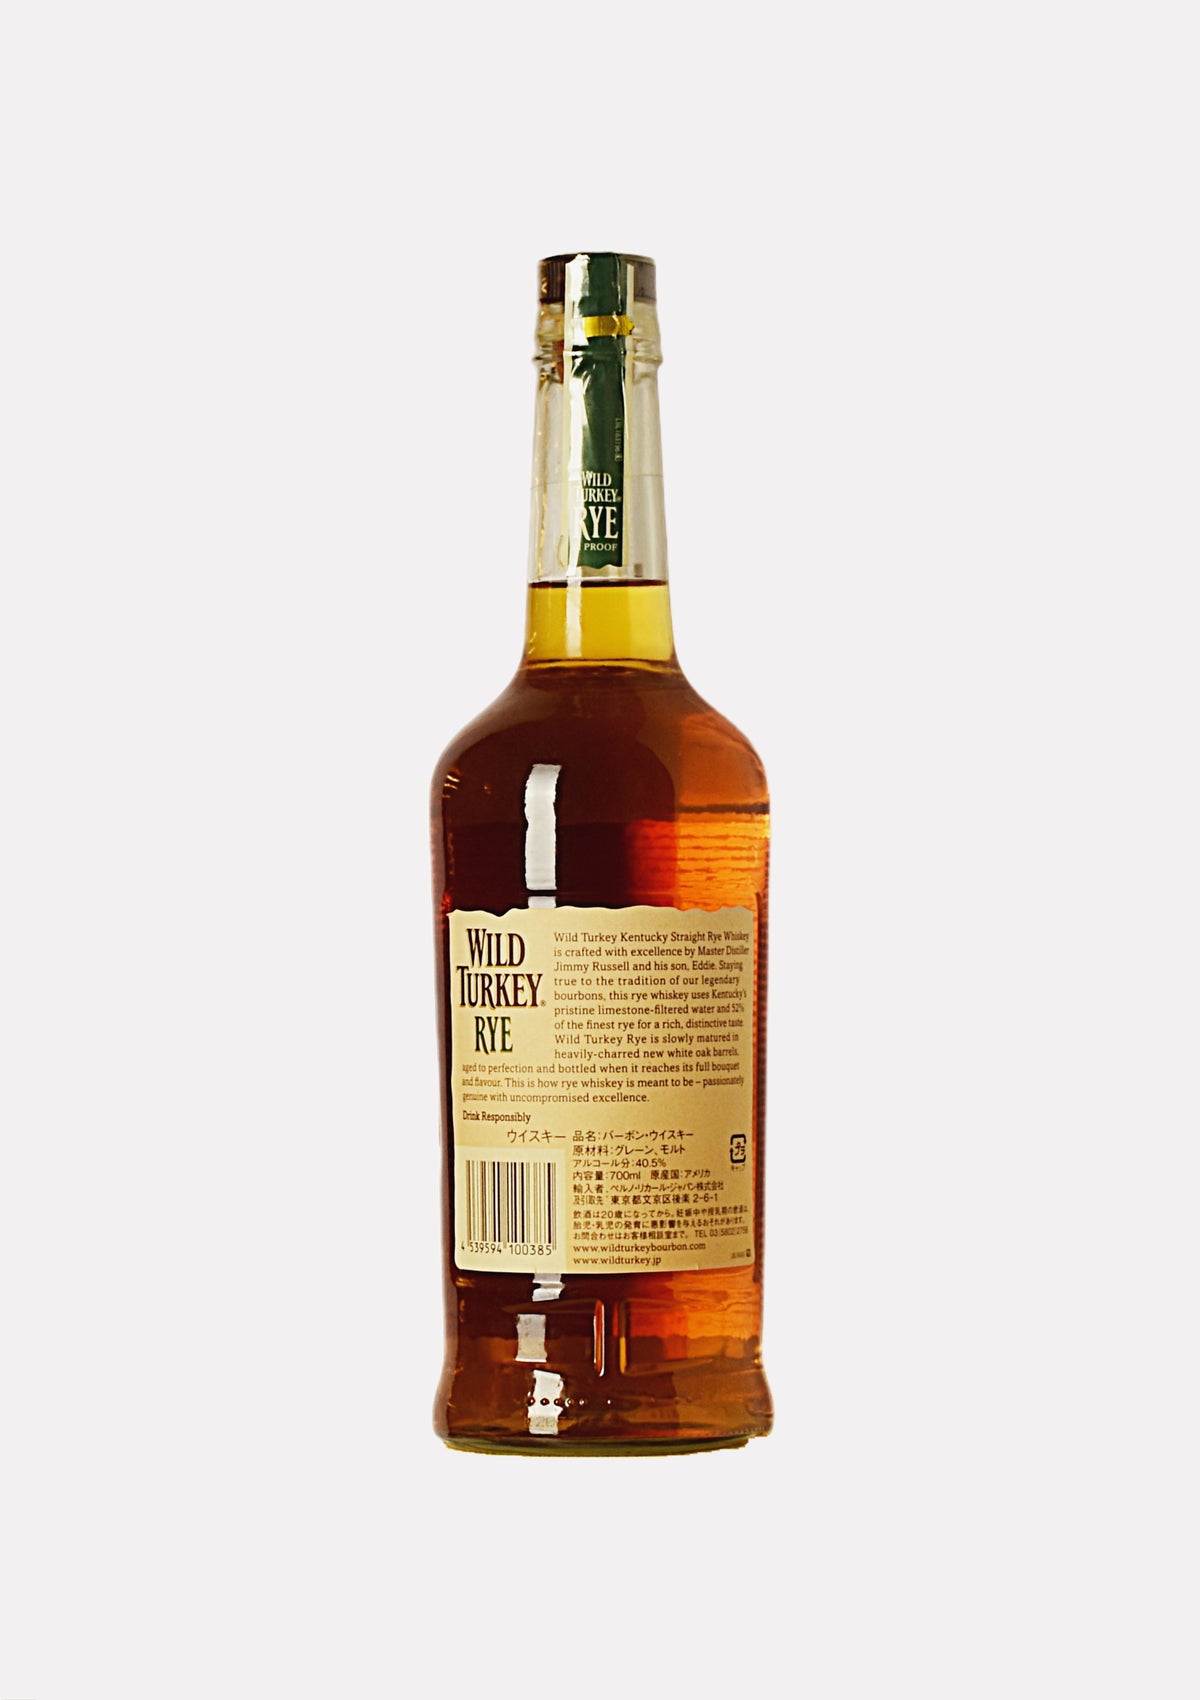 Wild Turkey Rye Kentucky Straight Rye Whiskey